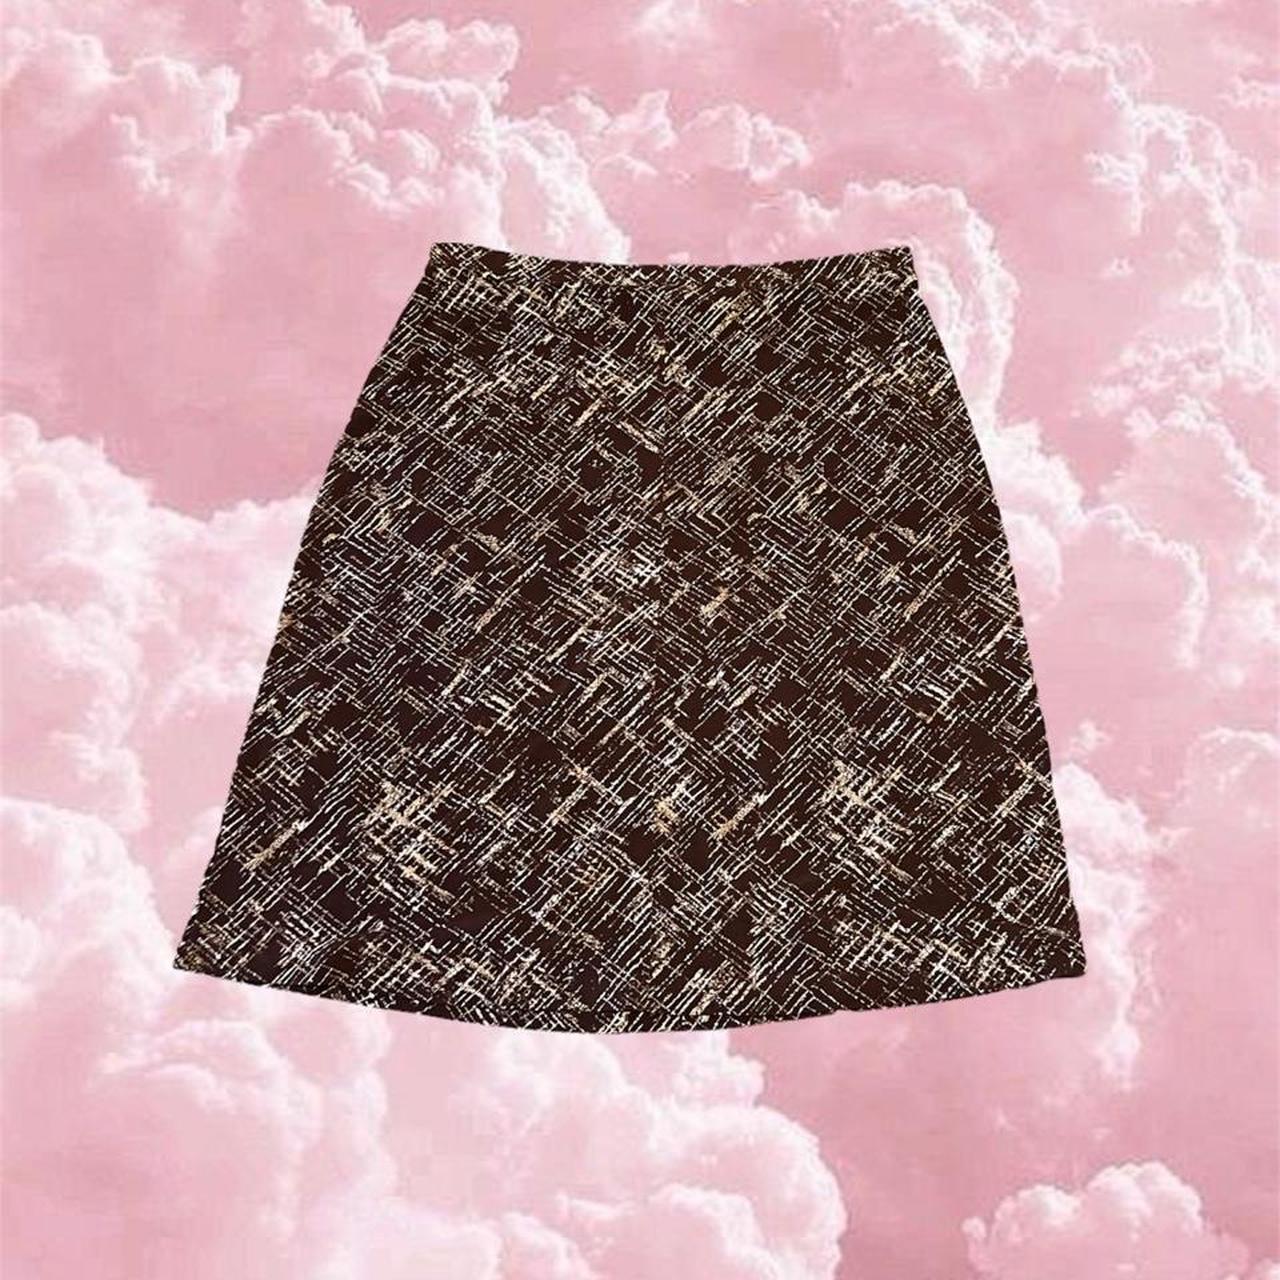 Vintage Merona Skirt About Knee Length Super Cute Depop